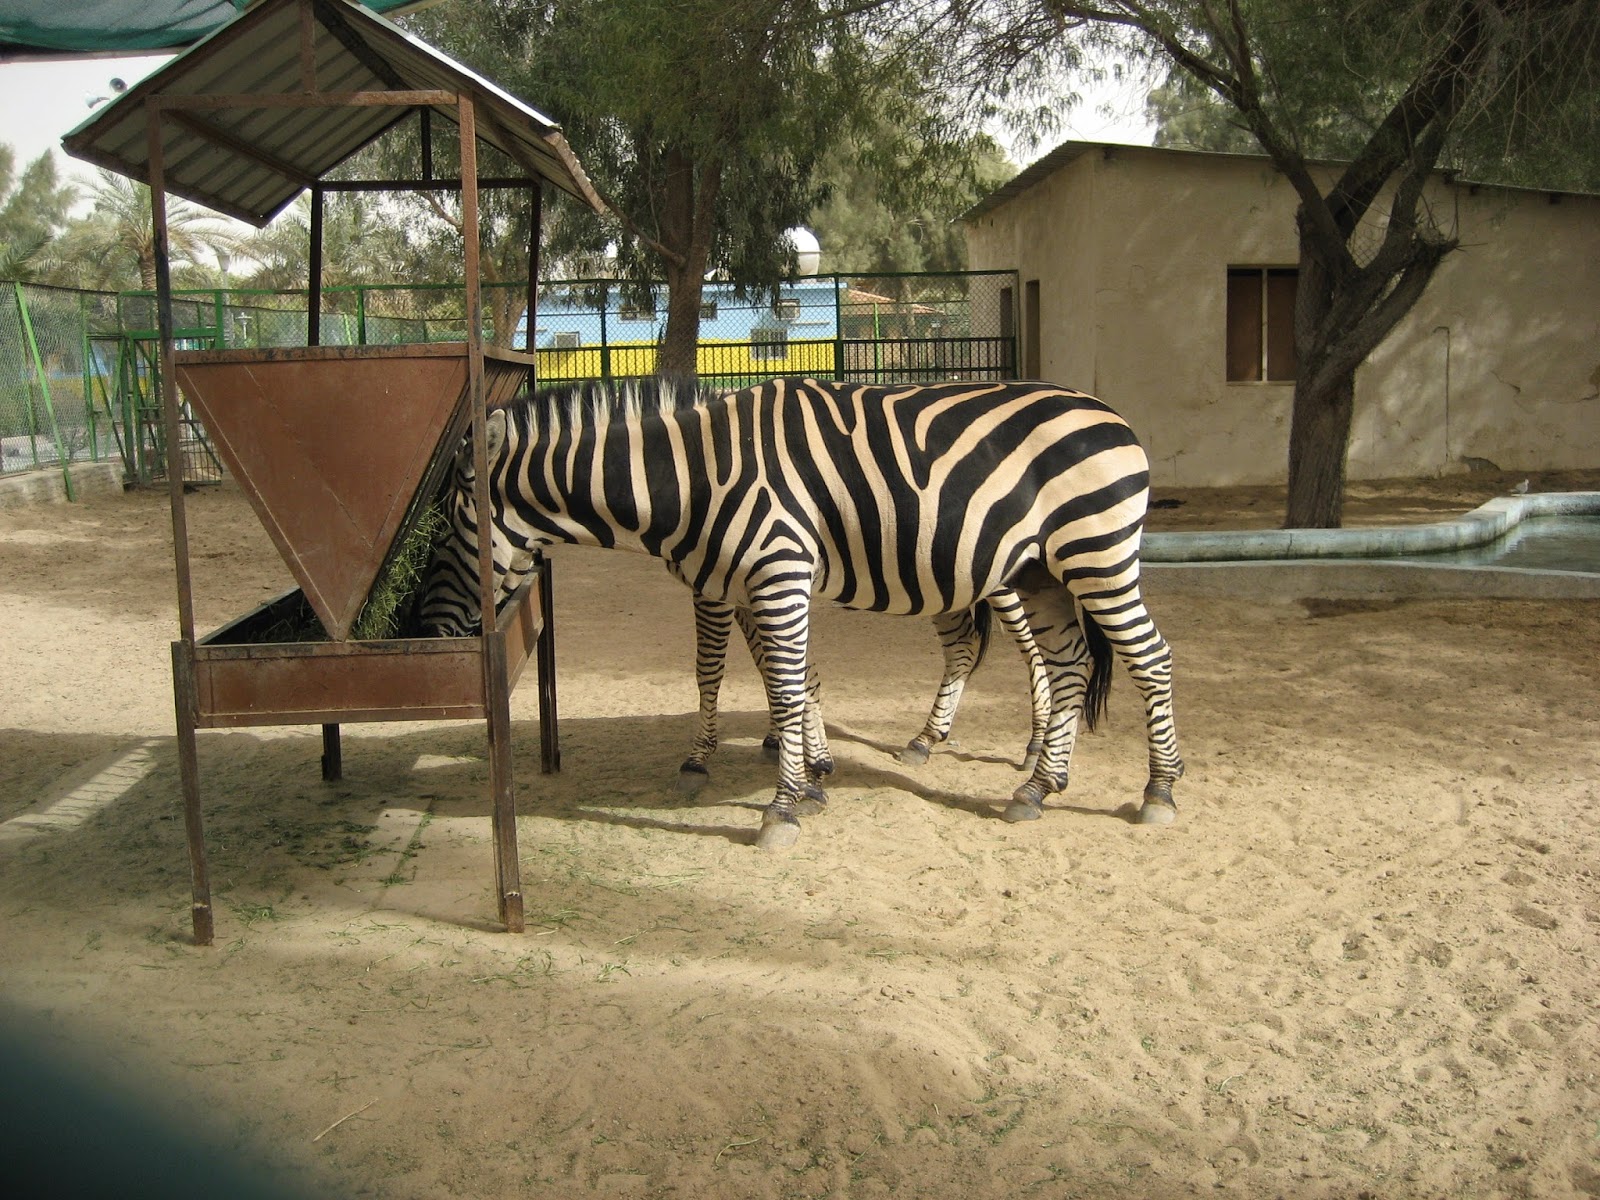 Wanderful: Kuwait Zoo